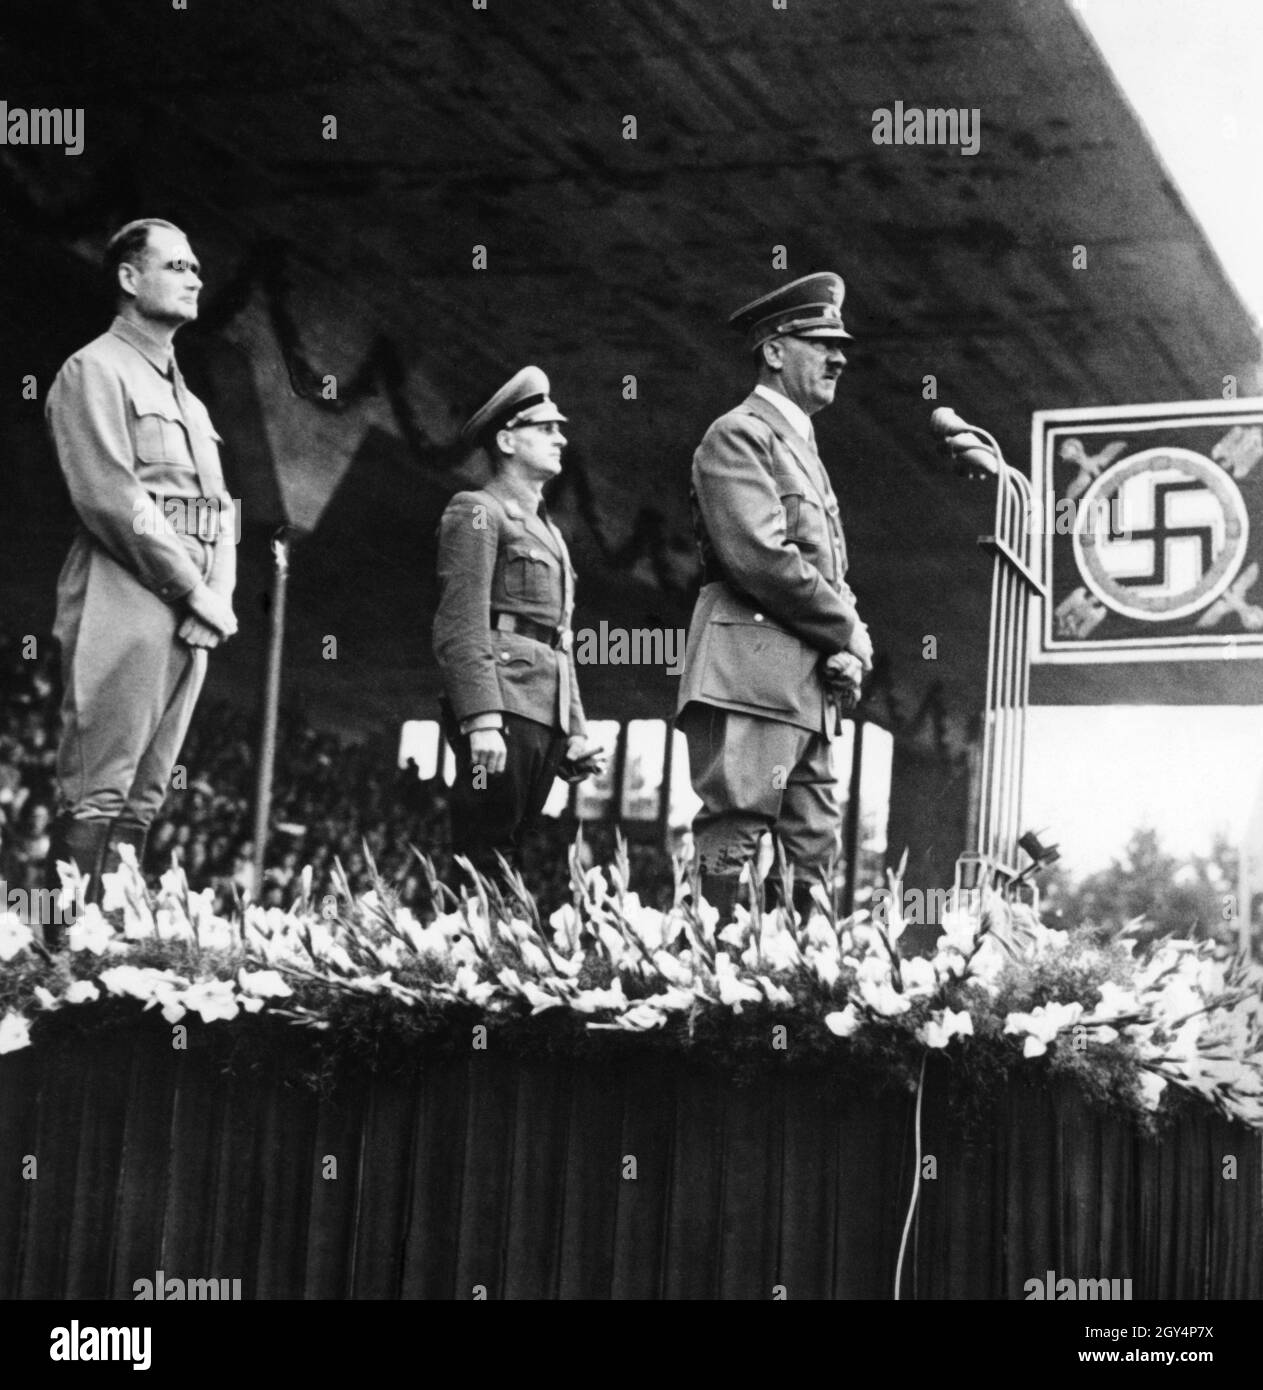 Hitler spricht auf der Parteikonferenz 'Großdeutschland' im Jahr 1938 an die Menge. Hinter ihm sein Stellvertreter Heß und der Reichsjugendführer Baldur von Schirach, der bei solchen Anlässen immer dabei war, als Gruppen der Hitlerjugend aufmarschierten. [Automatisierte Übersetzung]' Stockfoto